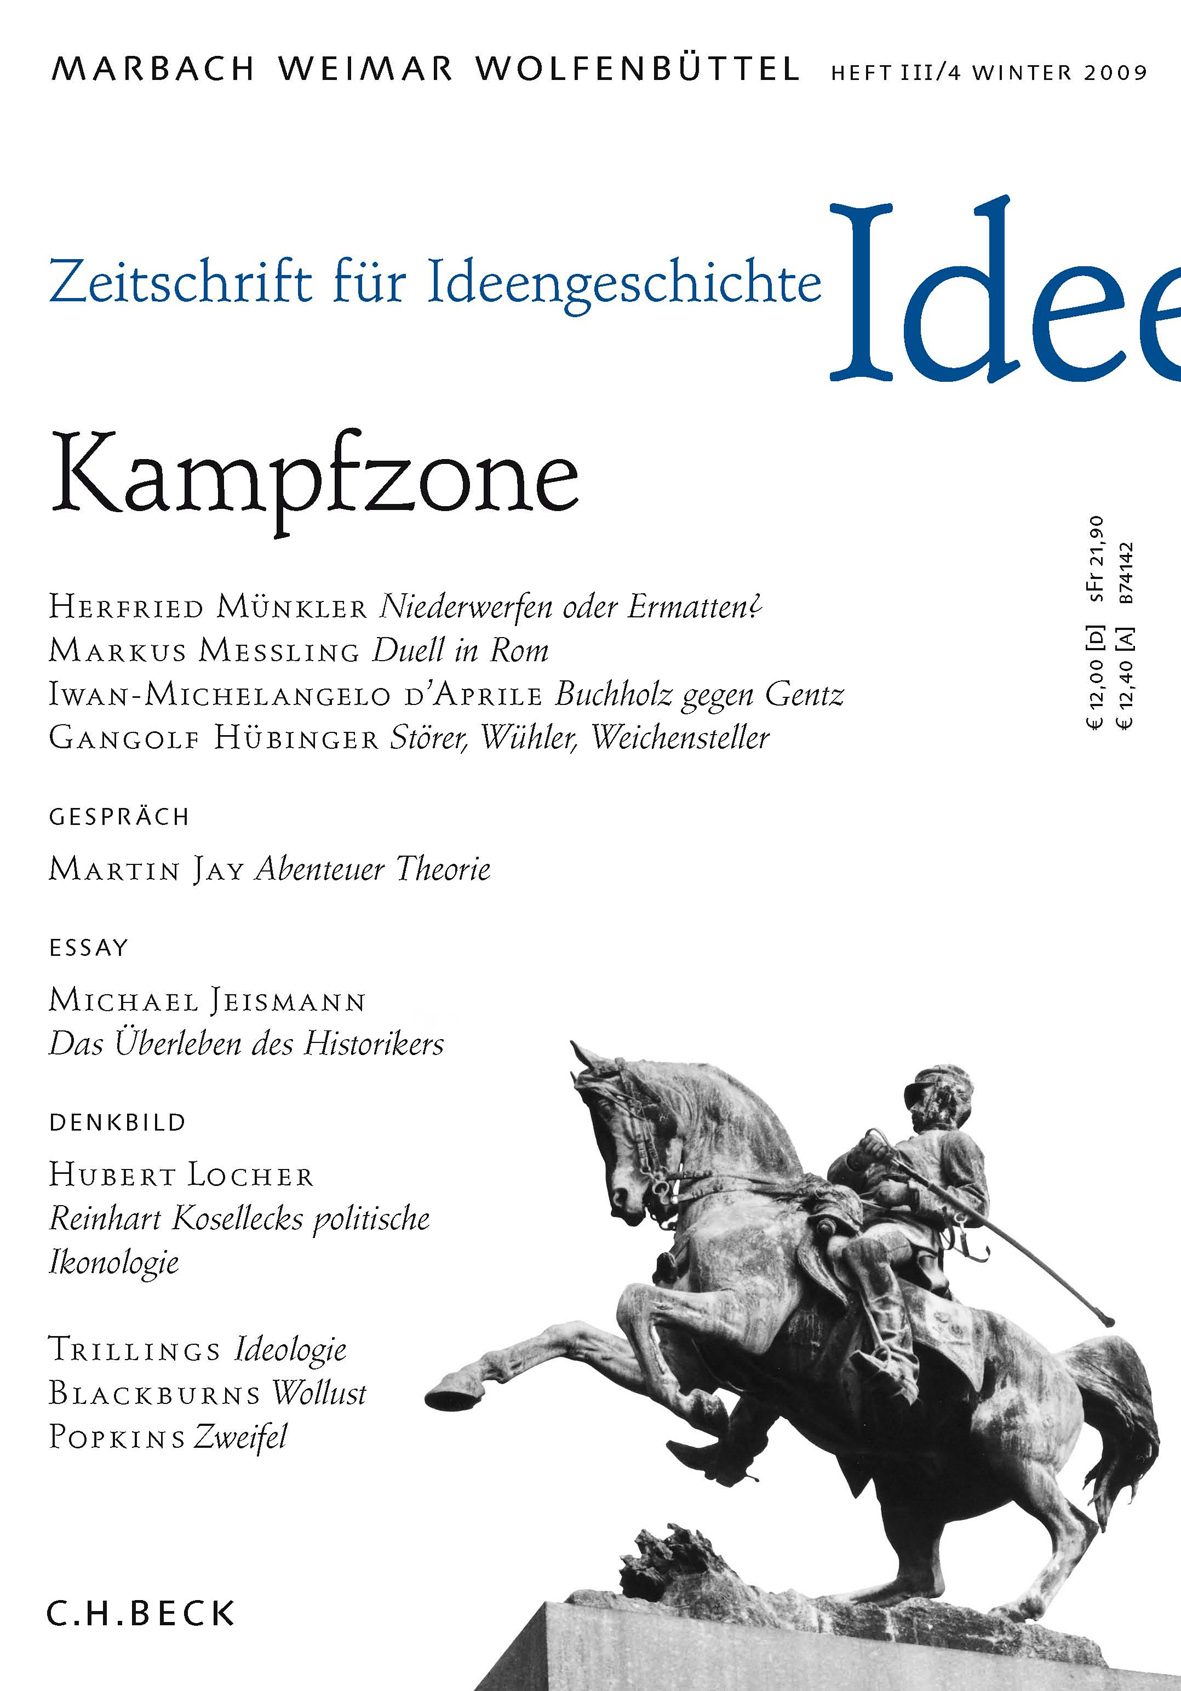 cover of Heft III/4 Winter 2009